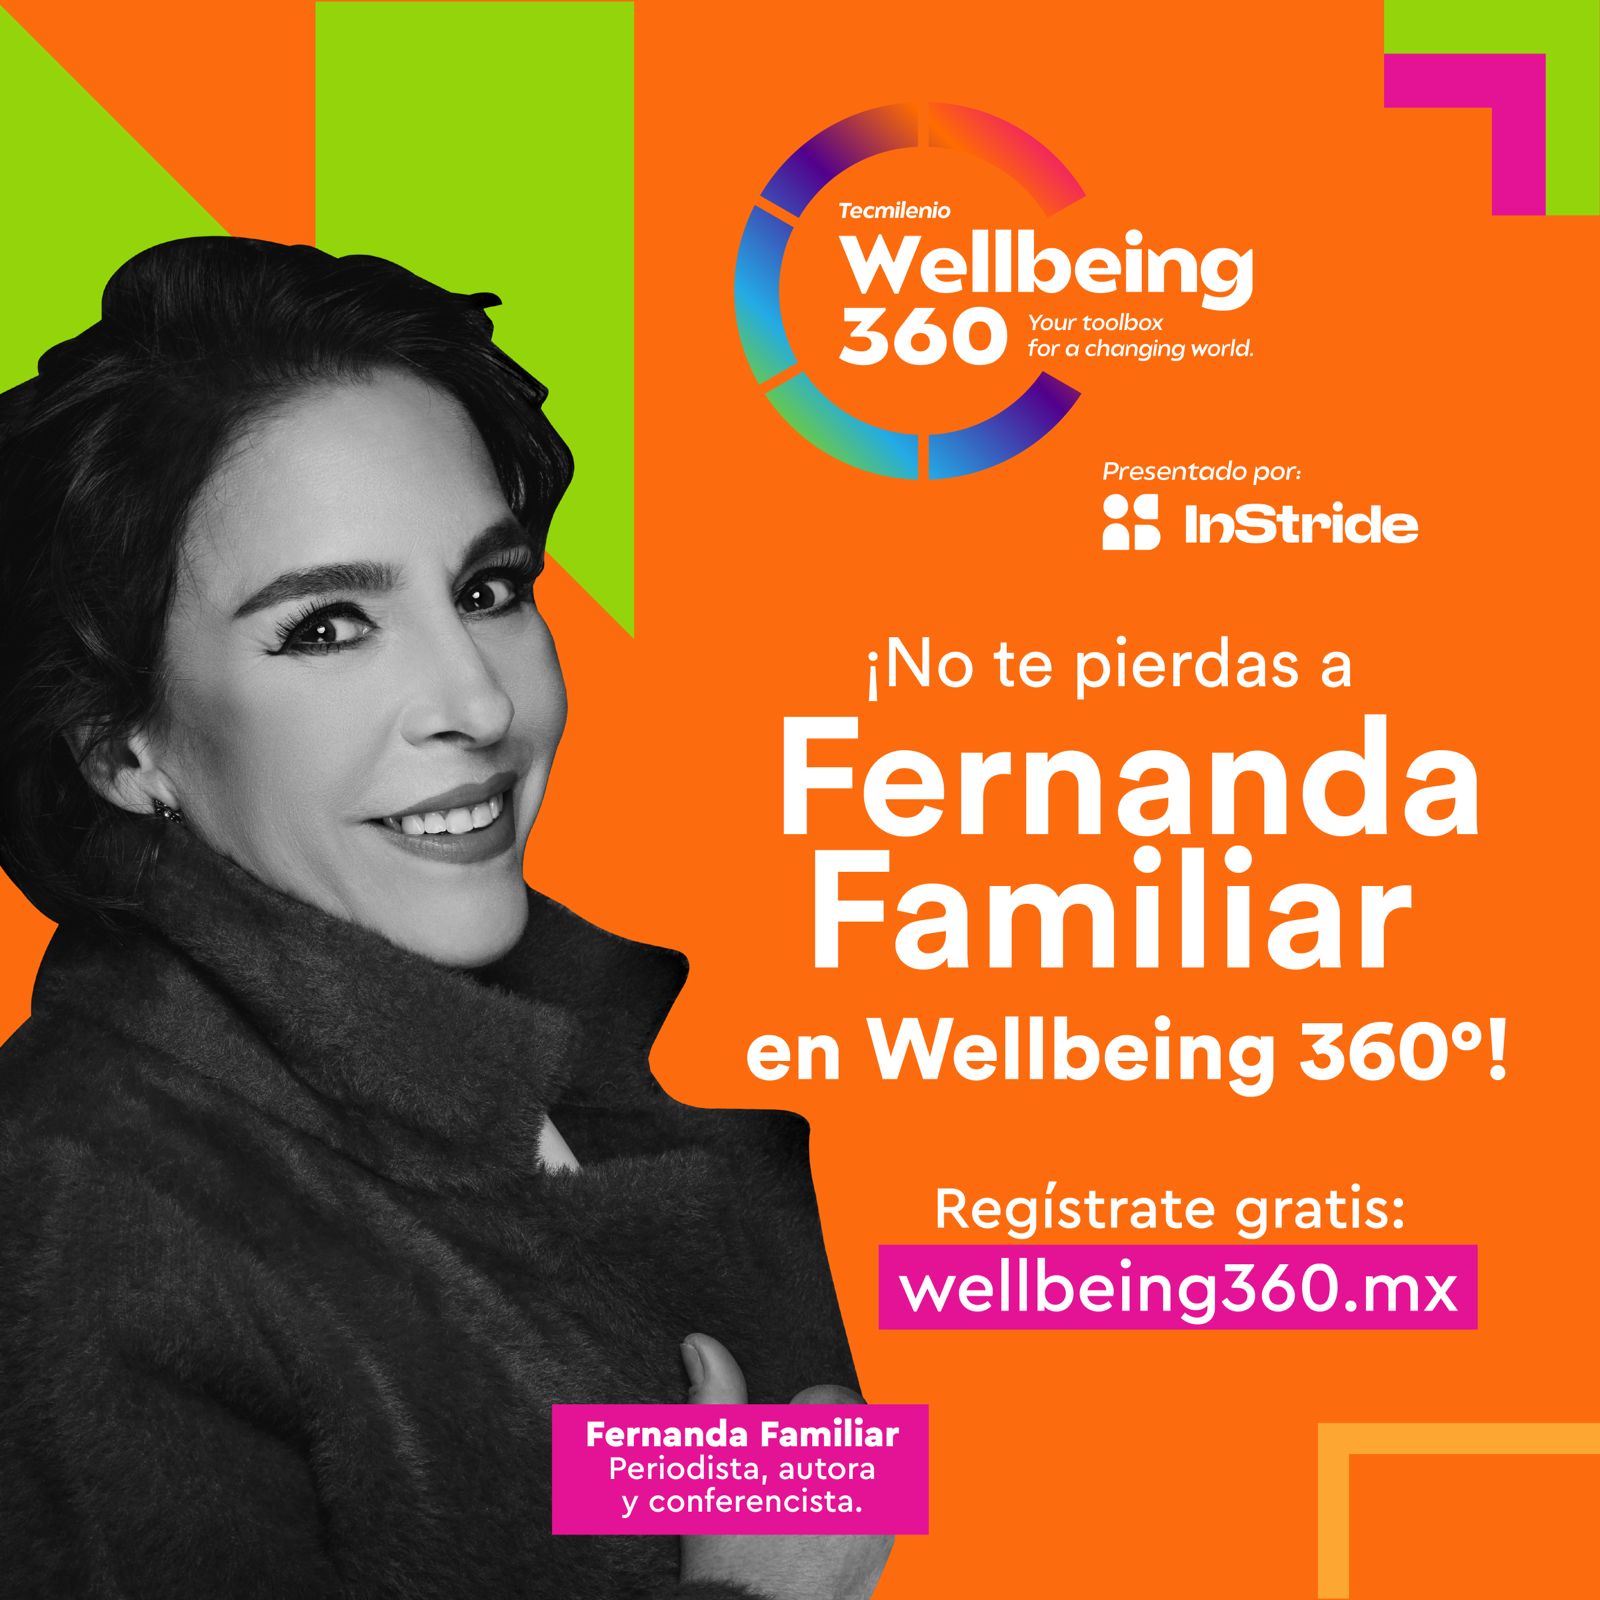 Experimenta Wellbeing 360° de Universidad Tecmilenio